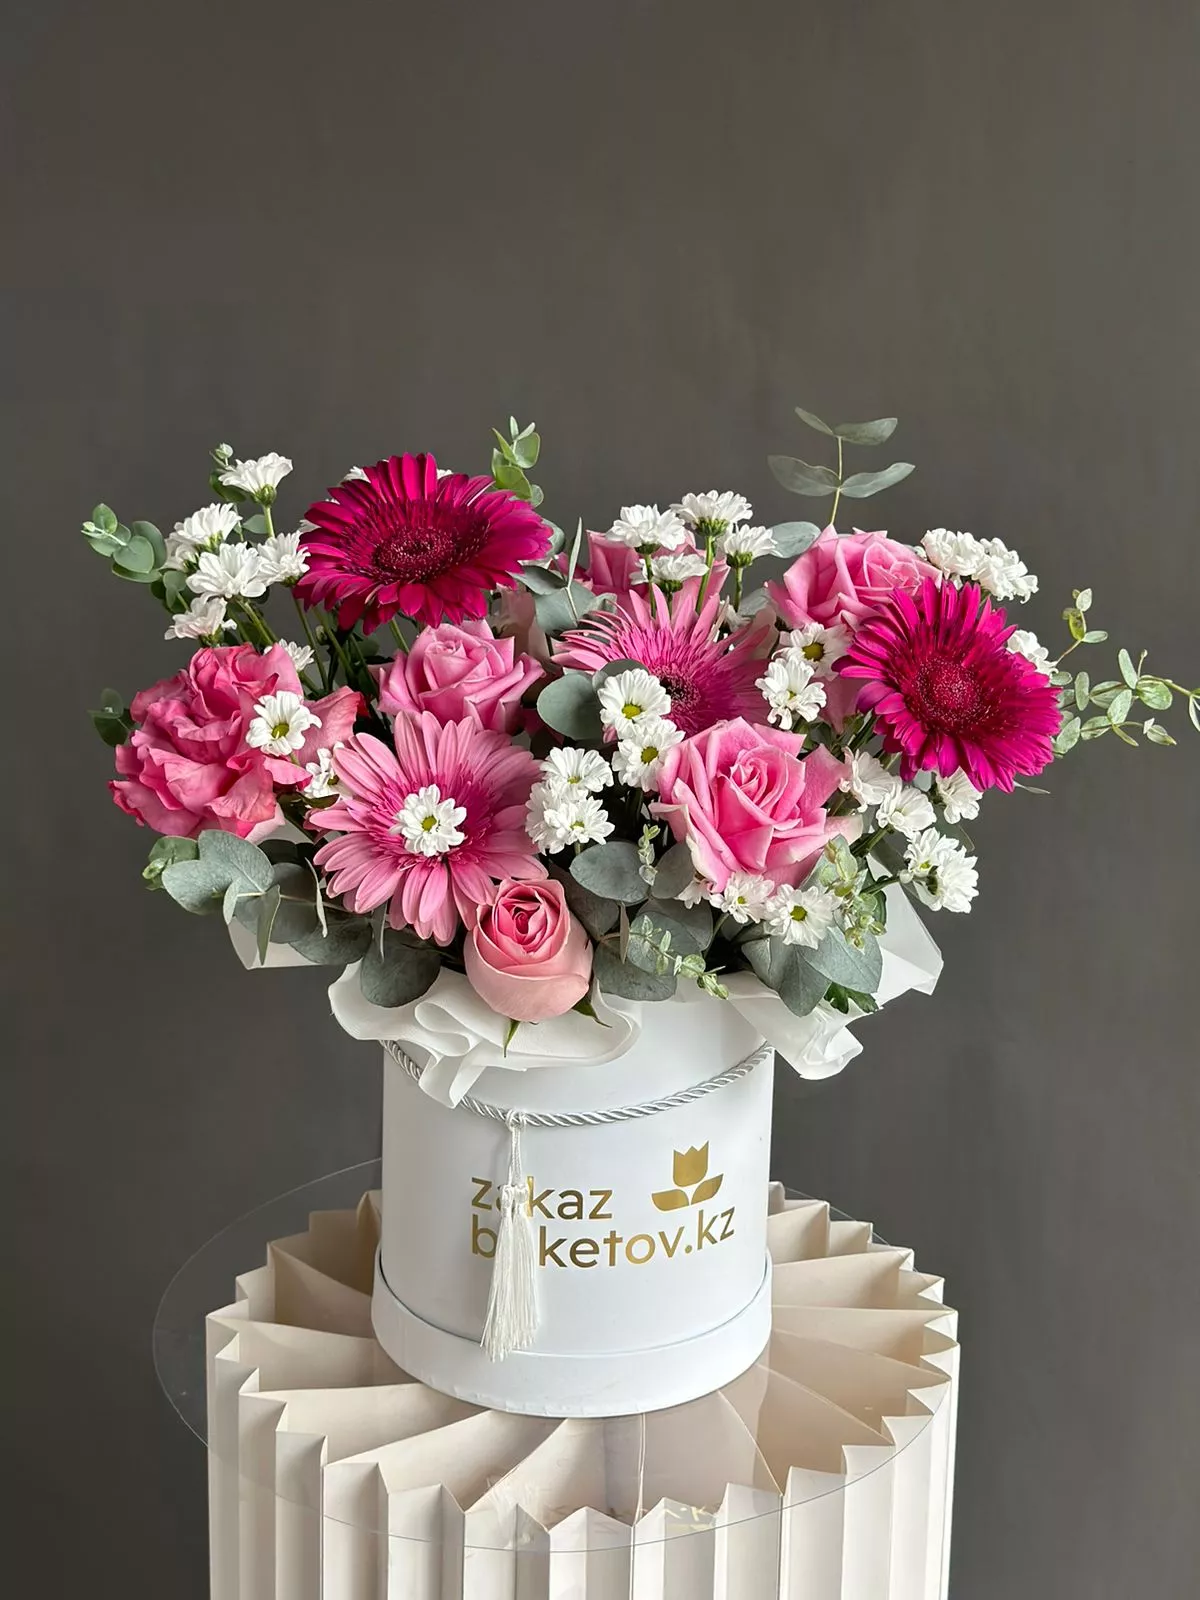 Композиция "Katty" из гербер, роз и хризантем в коробке. 